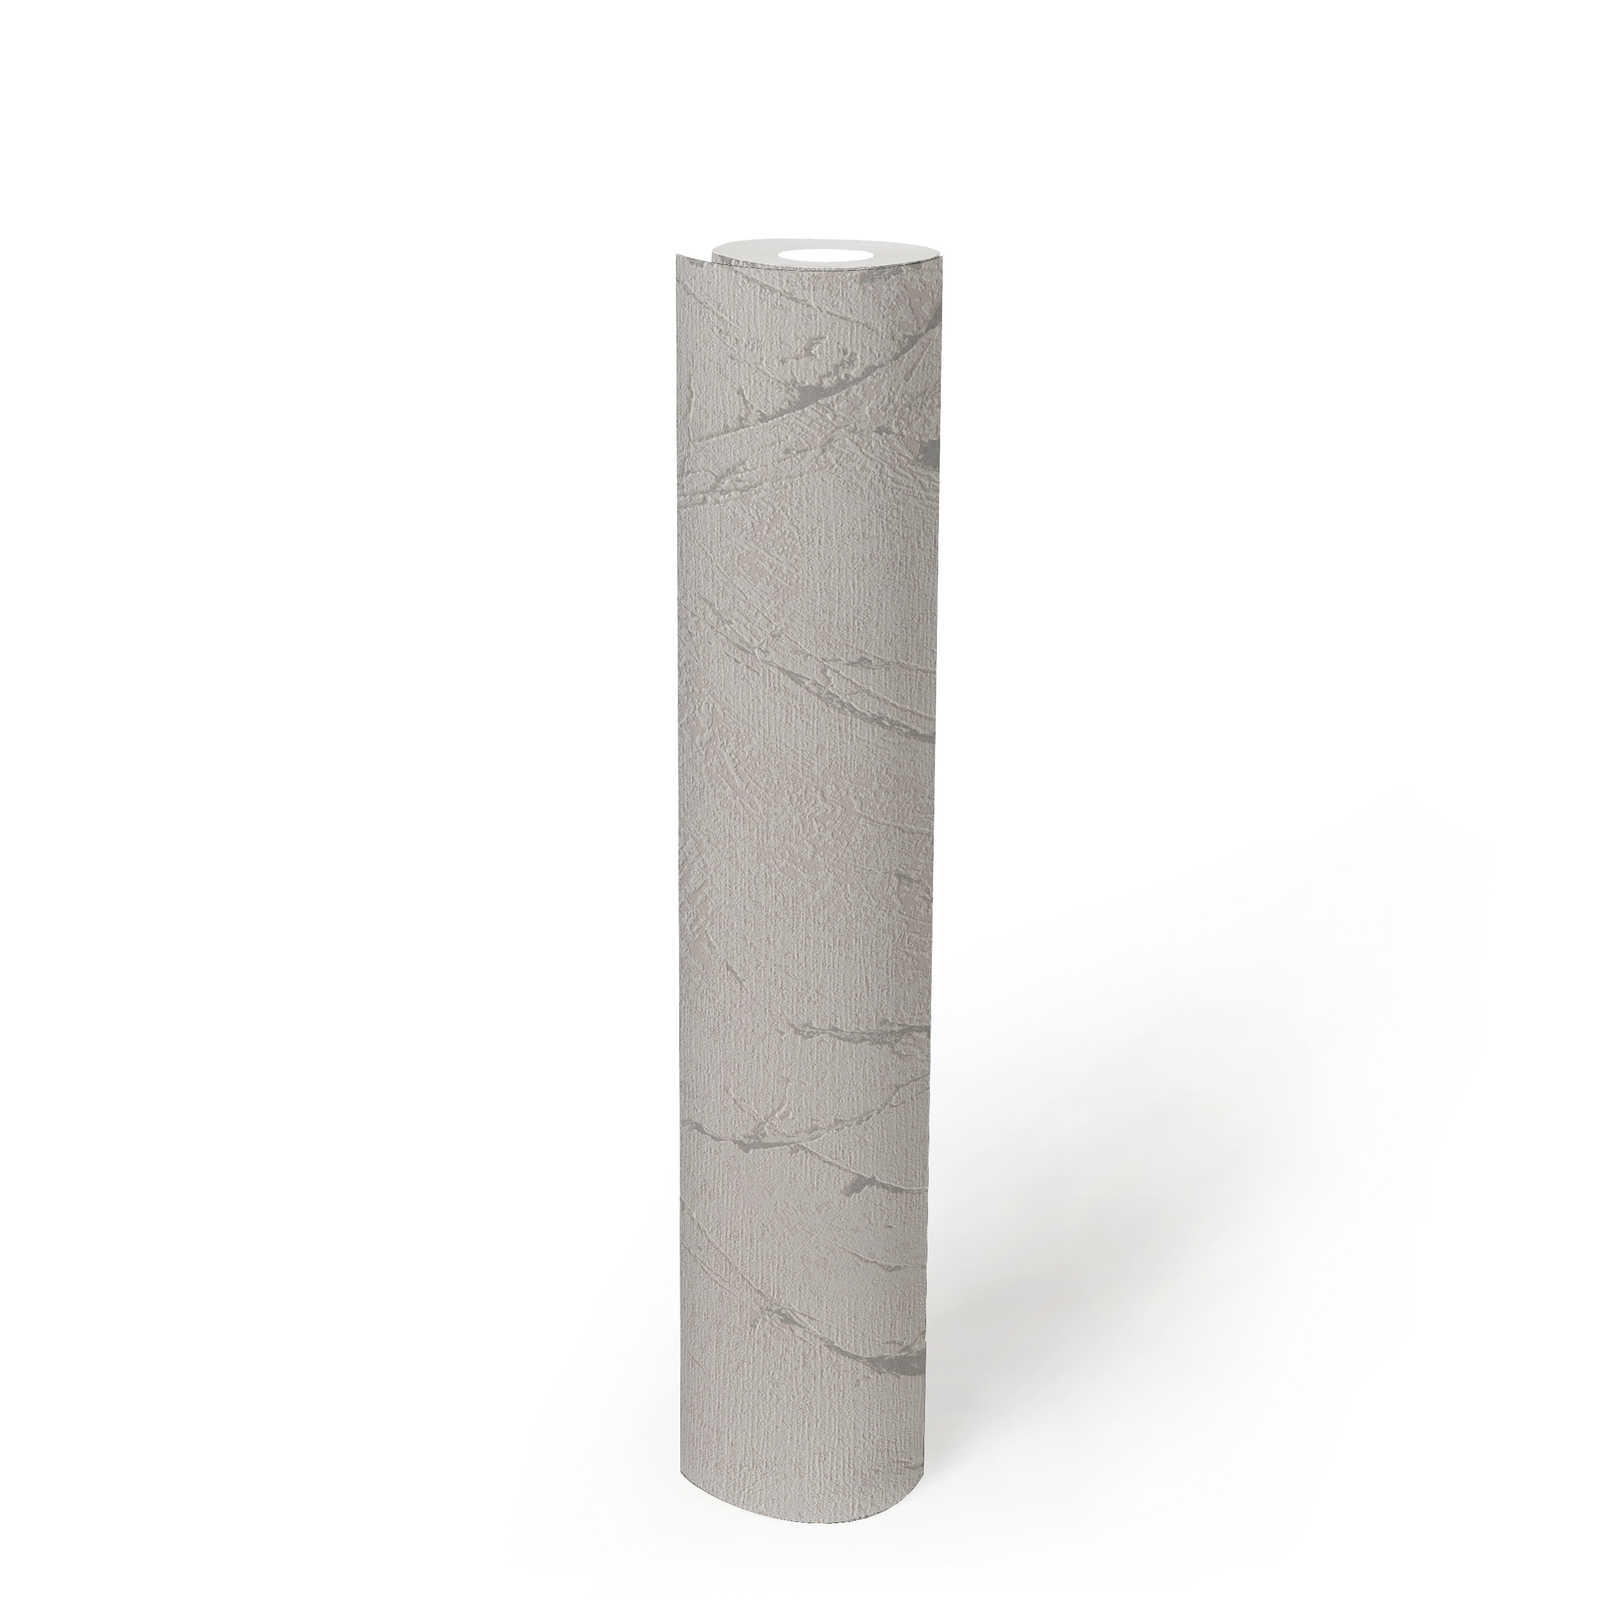             papier peint en papier intissé imitation crépi avec effet métallisé - gris, argenté, métallique
        